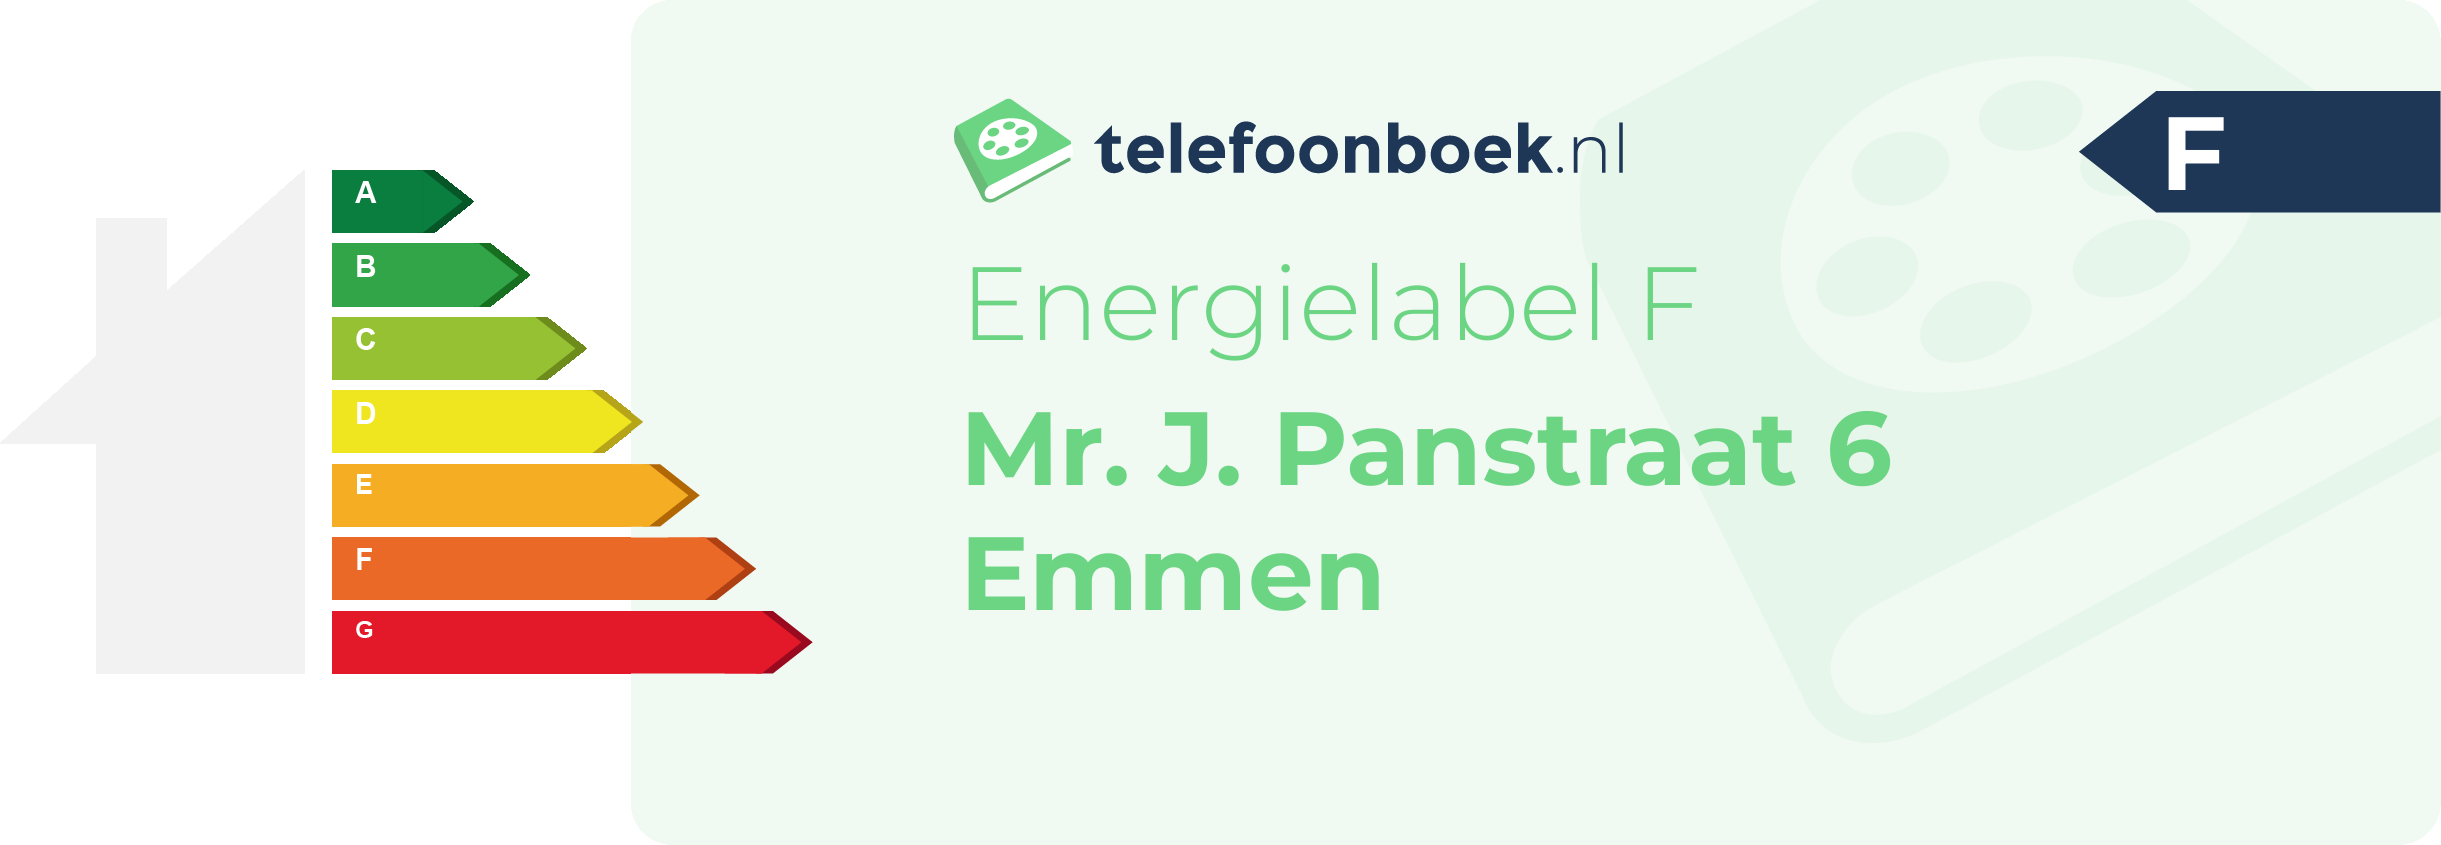 Energielabel Mr. J. Panstraat 6 Emmen